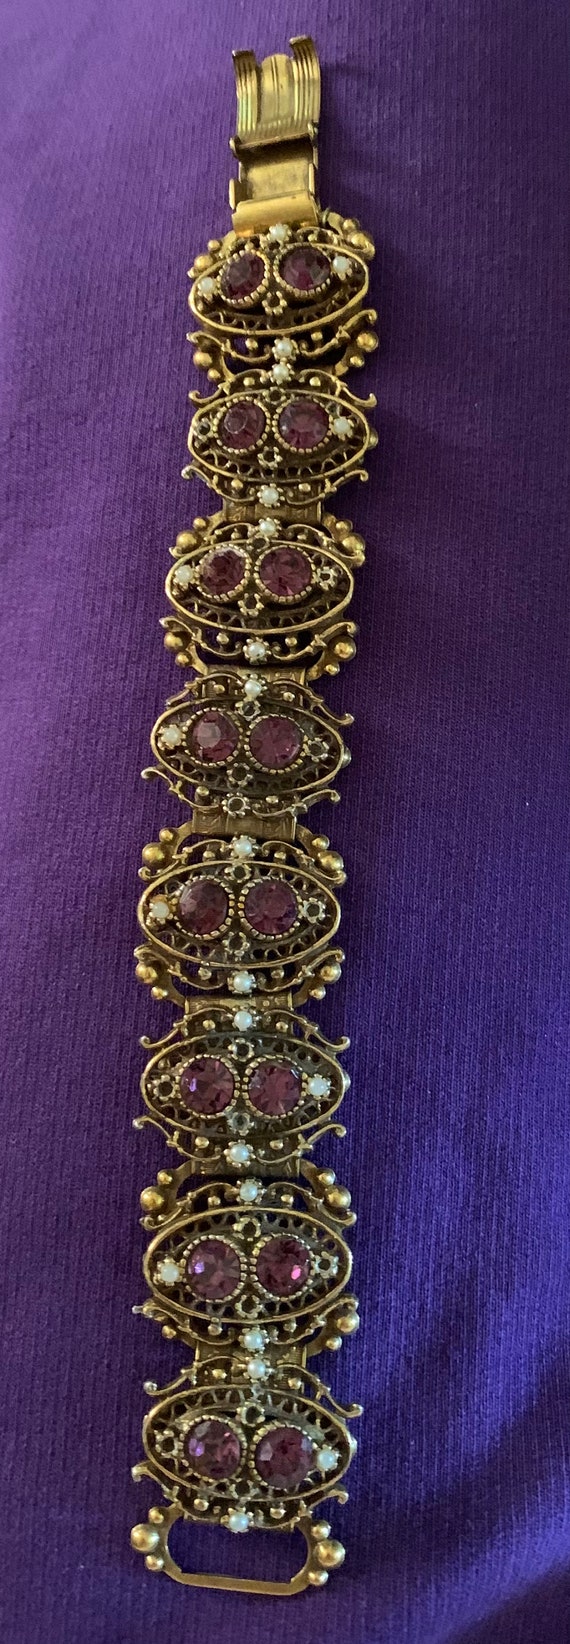 Vintage amethyst and pearls bracelet